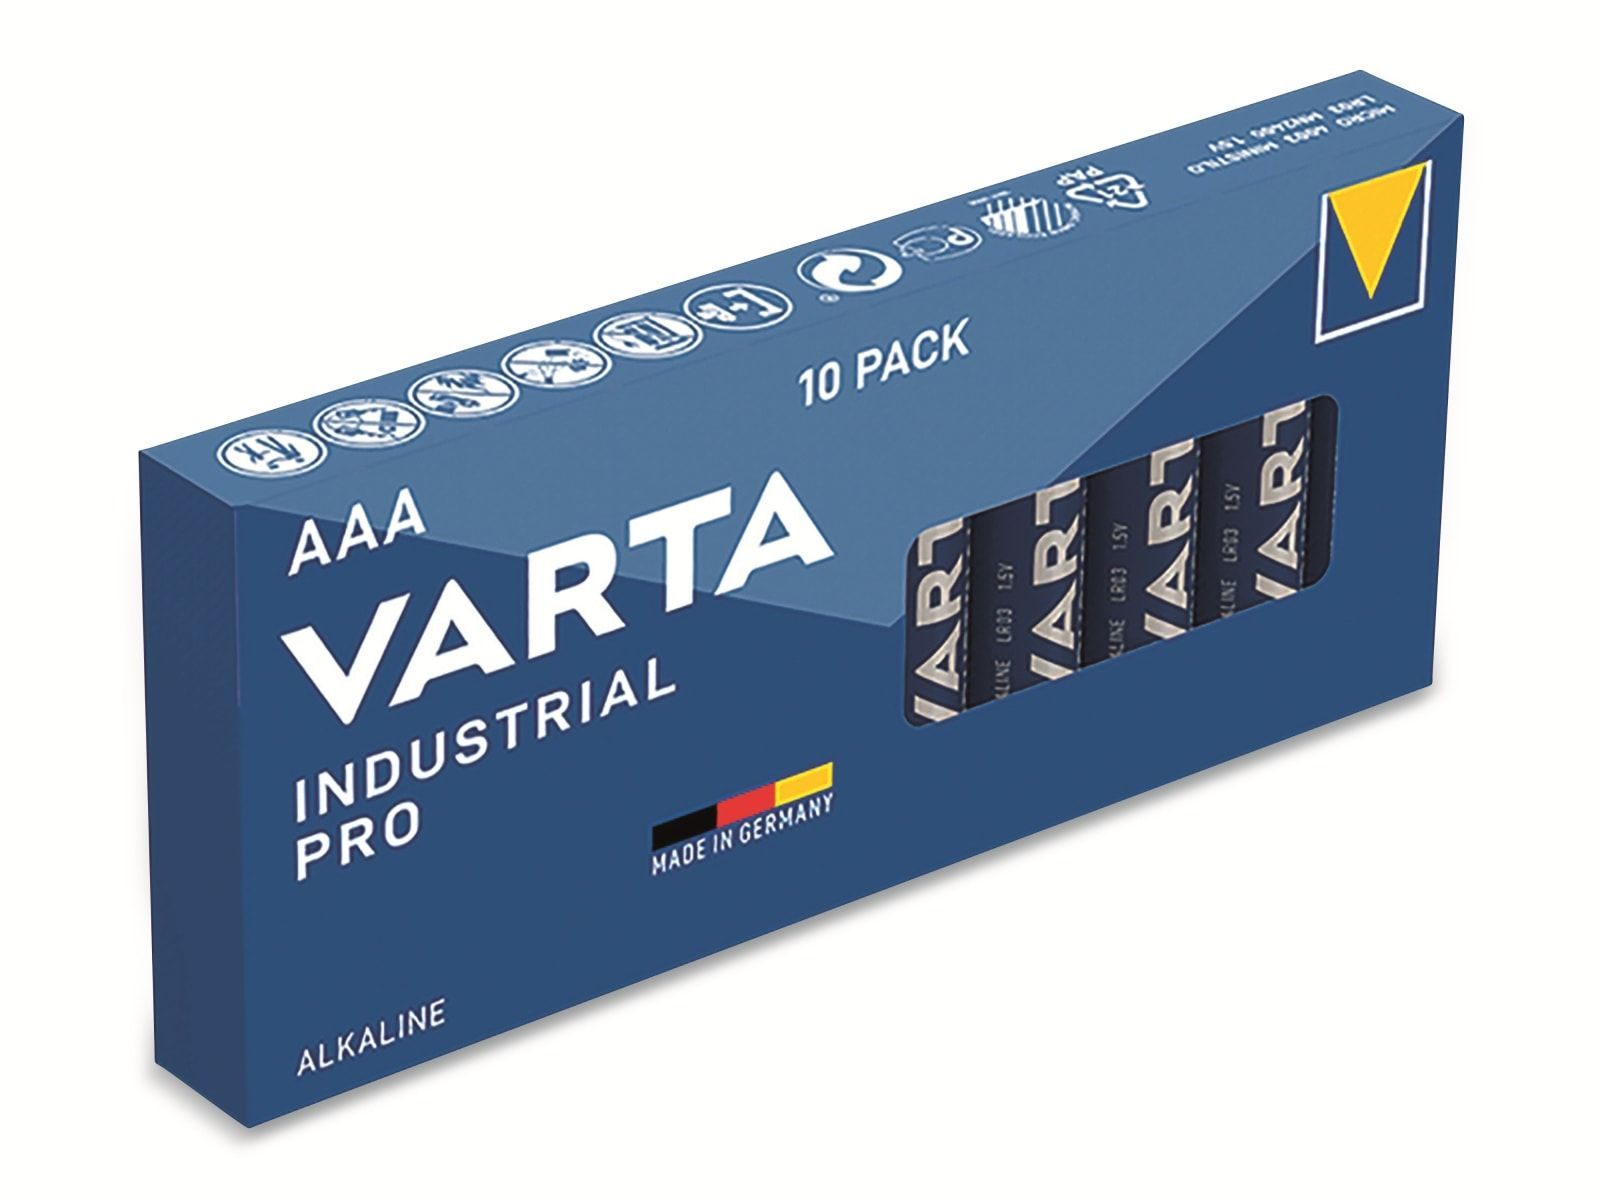 Stück Micro, LR03, AAA, VARTA Alkaline Alkaline, Pro, 10 1.5V, Batterie Batterie Industrial